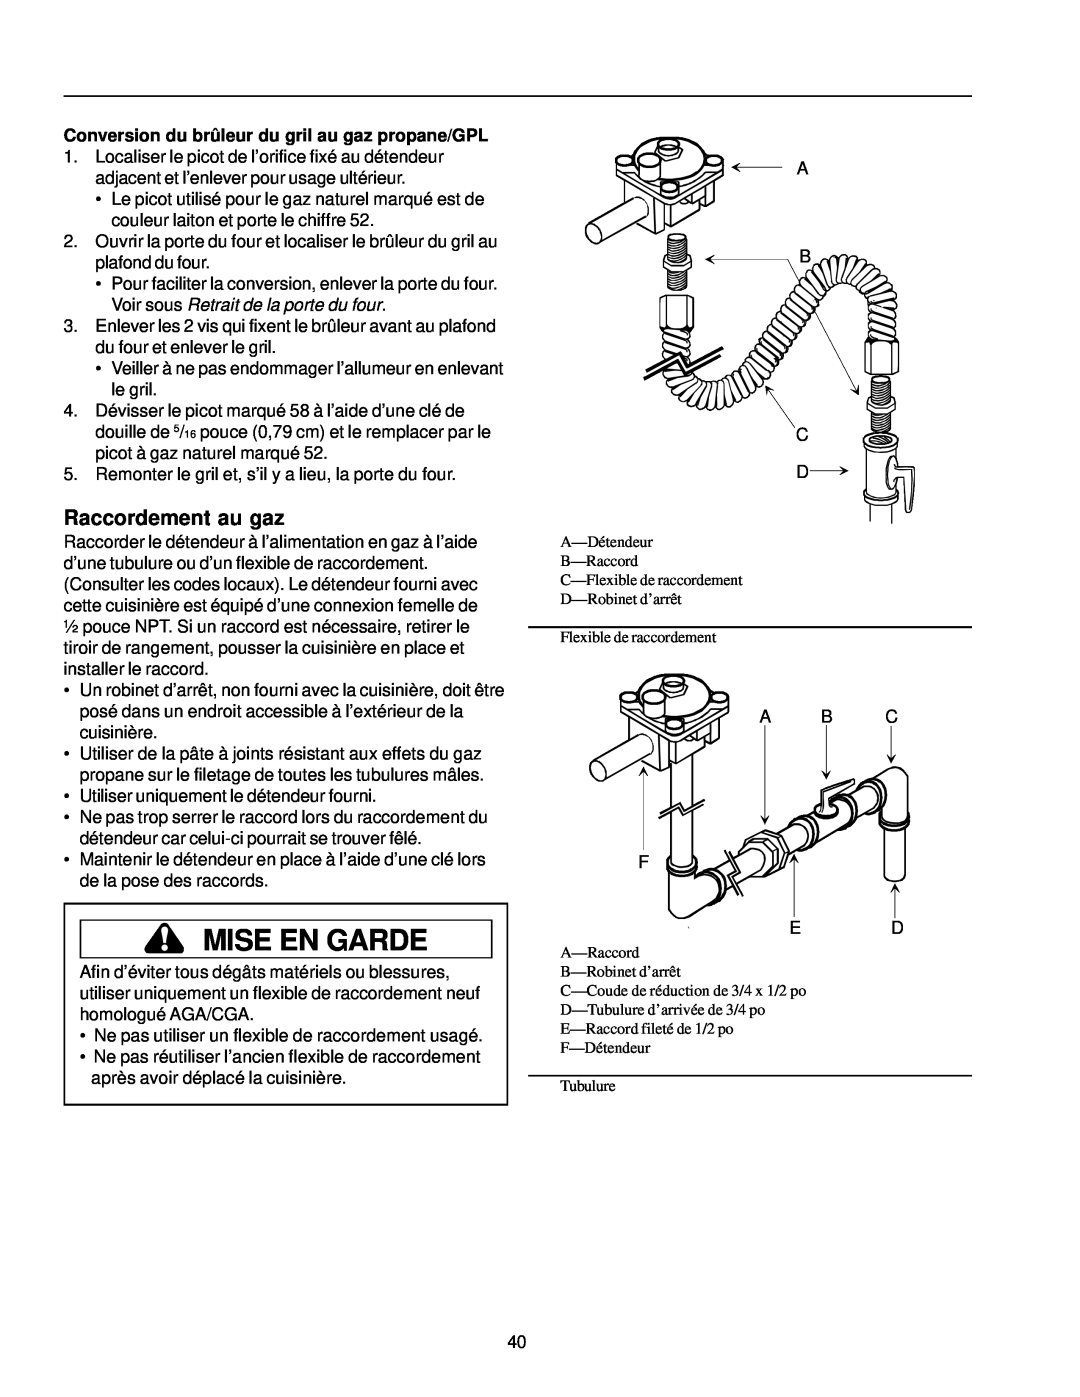 Amana ARG7302 manual Raccordement au gaz, Mise En Garde, Conversion du brûleur du gril au gaz propane/GPL, Tubulure 